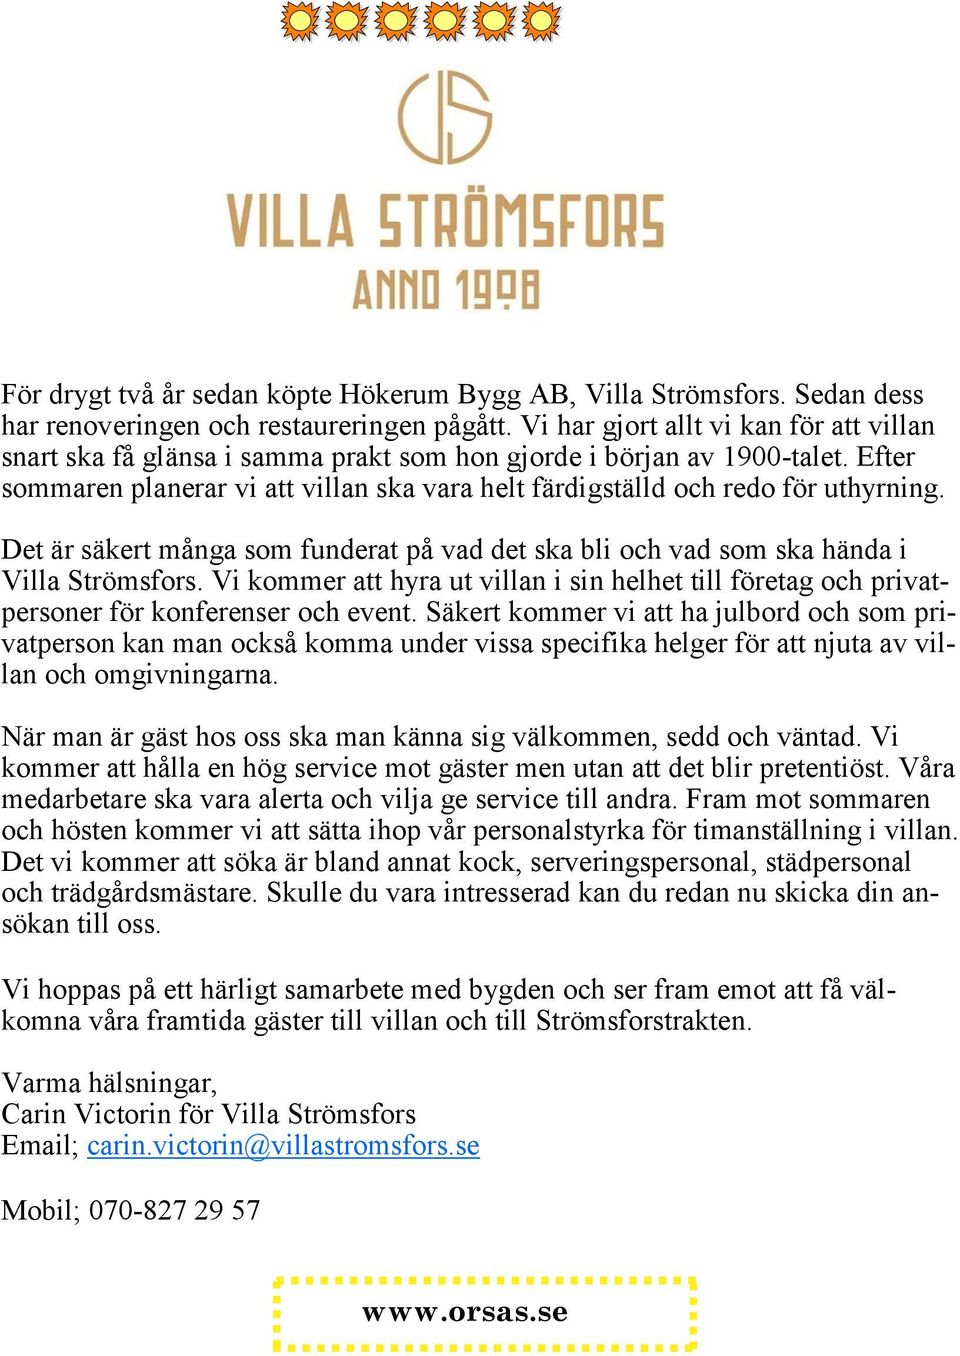 Efter sommaren planerar vi att villan ska vara helt färdigställd och redo för uthyrning. Det är säkert många som funderat på vad det ska bli och vad som ska hända i Villa Strömsfors.